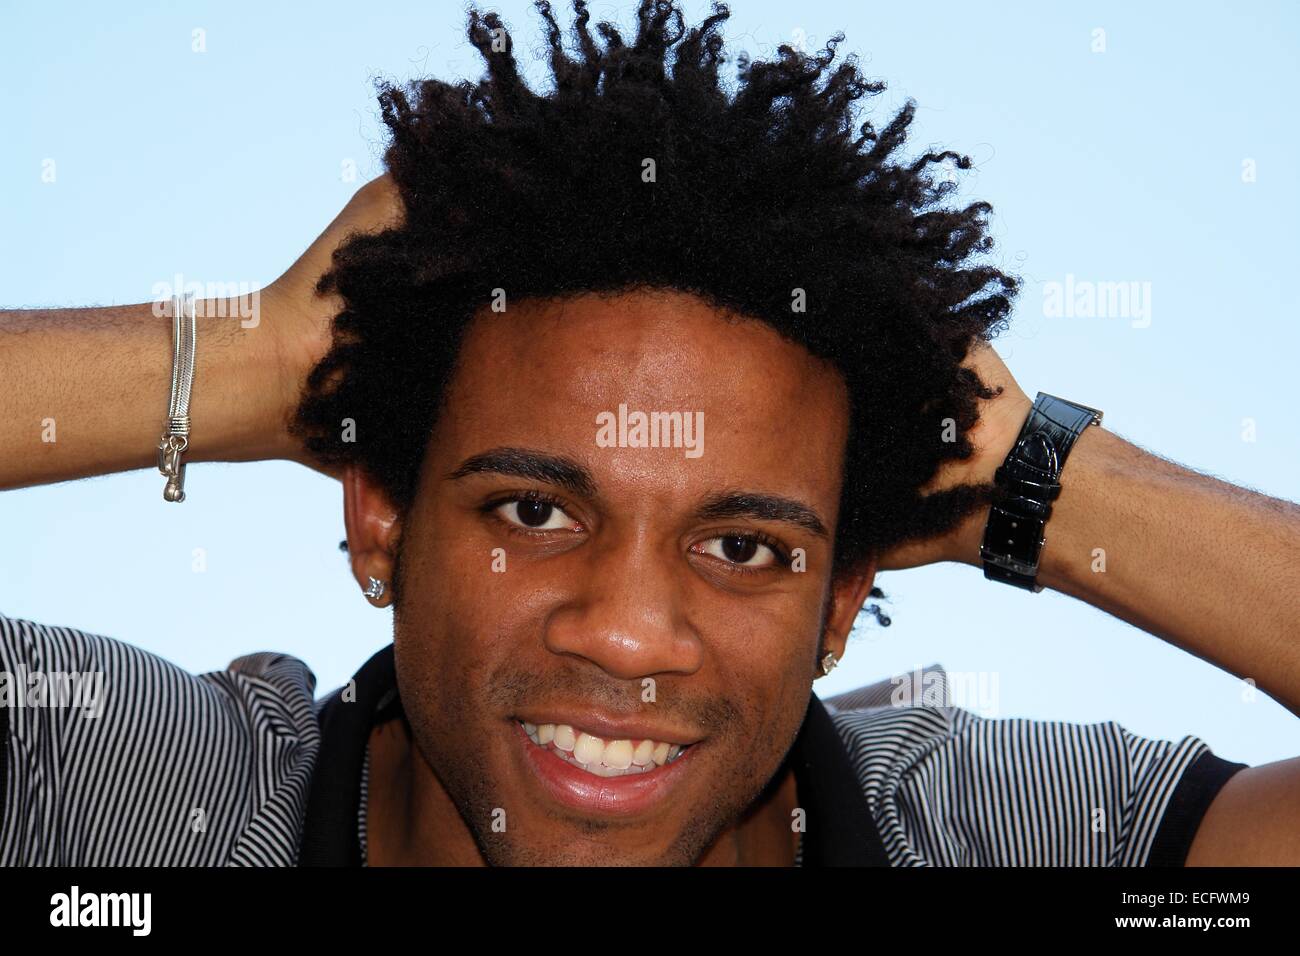 Portrat Einer Schonen Jungen Afrikanischen Mann Auf Der Strasse Portrat Von Rasta Schwarze Manner Dreadlocks Frisur Stockfotografie Alamy